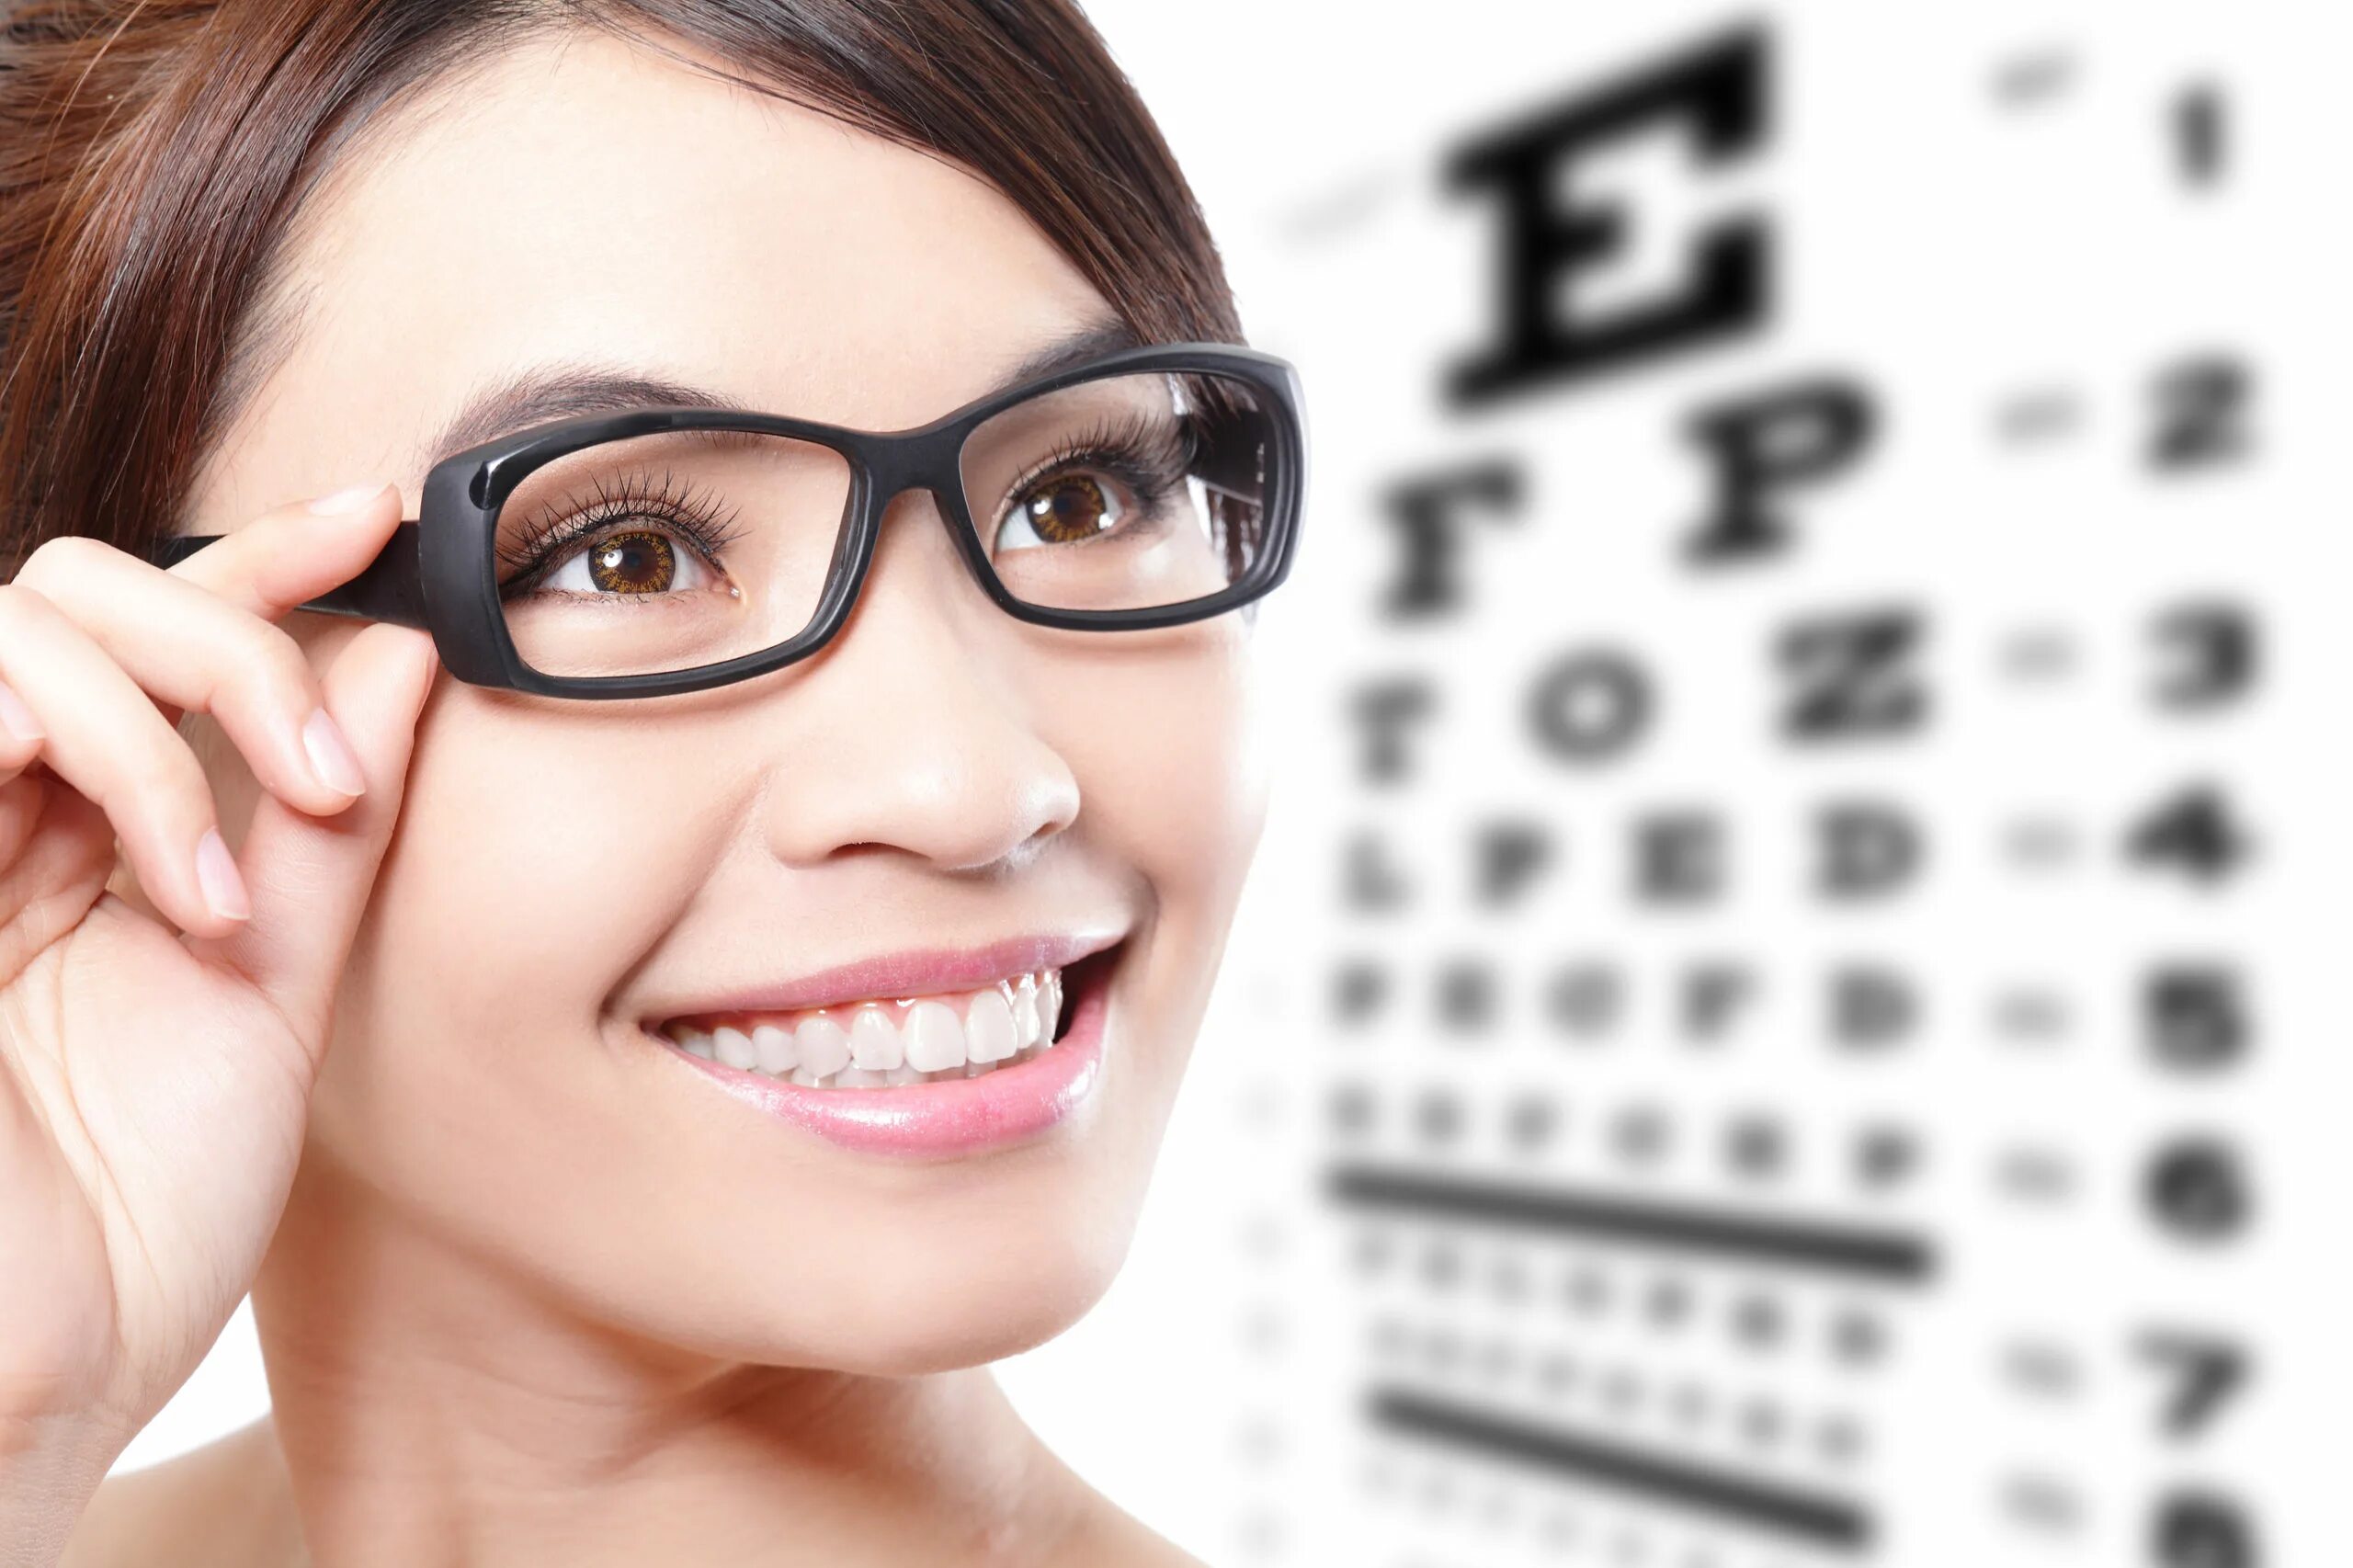 Человек проверяющий зрение. Оптика очки для зрения. Реклама очков для зрения. Девушка в очках для зрения. Очки для дальнозоркости.